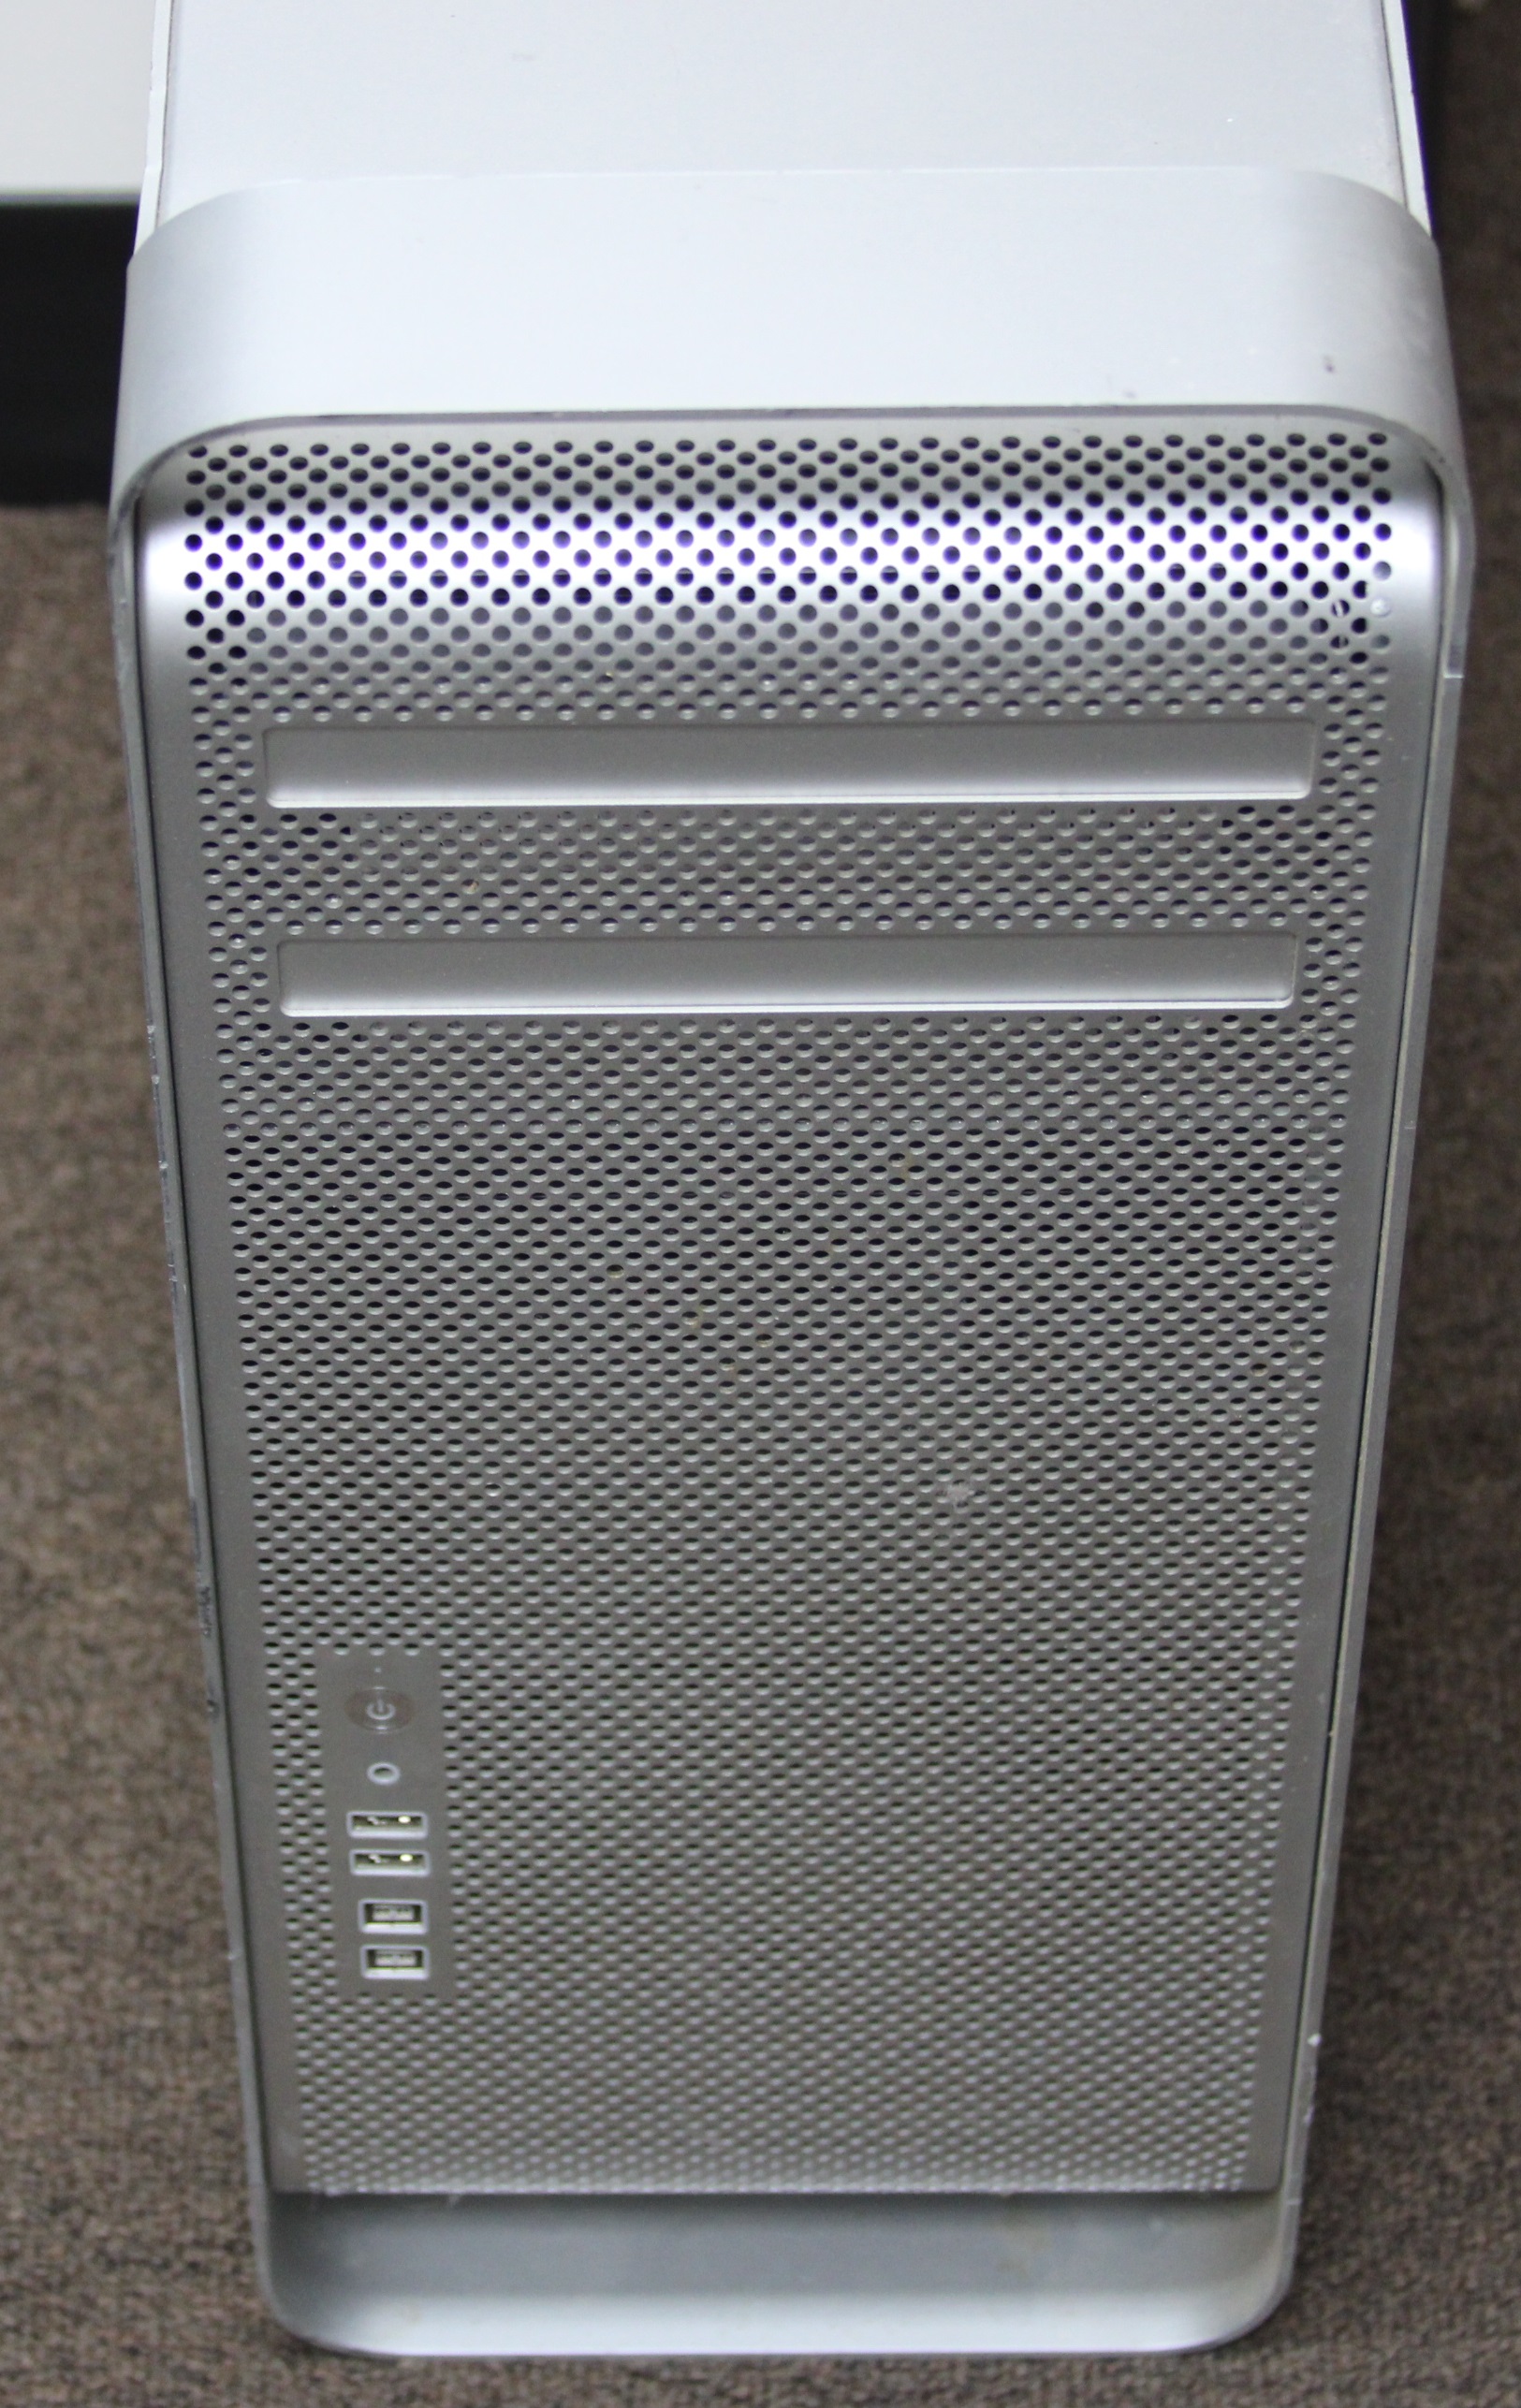 Apple Mac Pro TOWER A1289 2009 Intel Xeon W3520 2.26GHZ 12GB RAM 1TB HDD DESKTOP